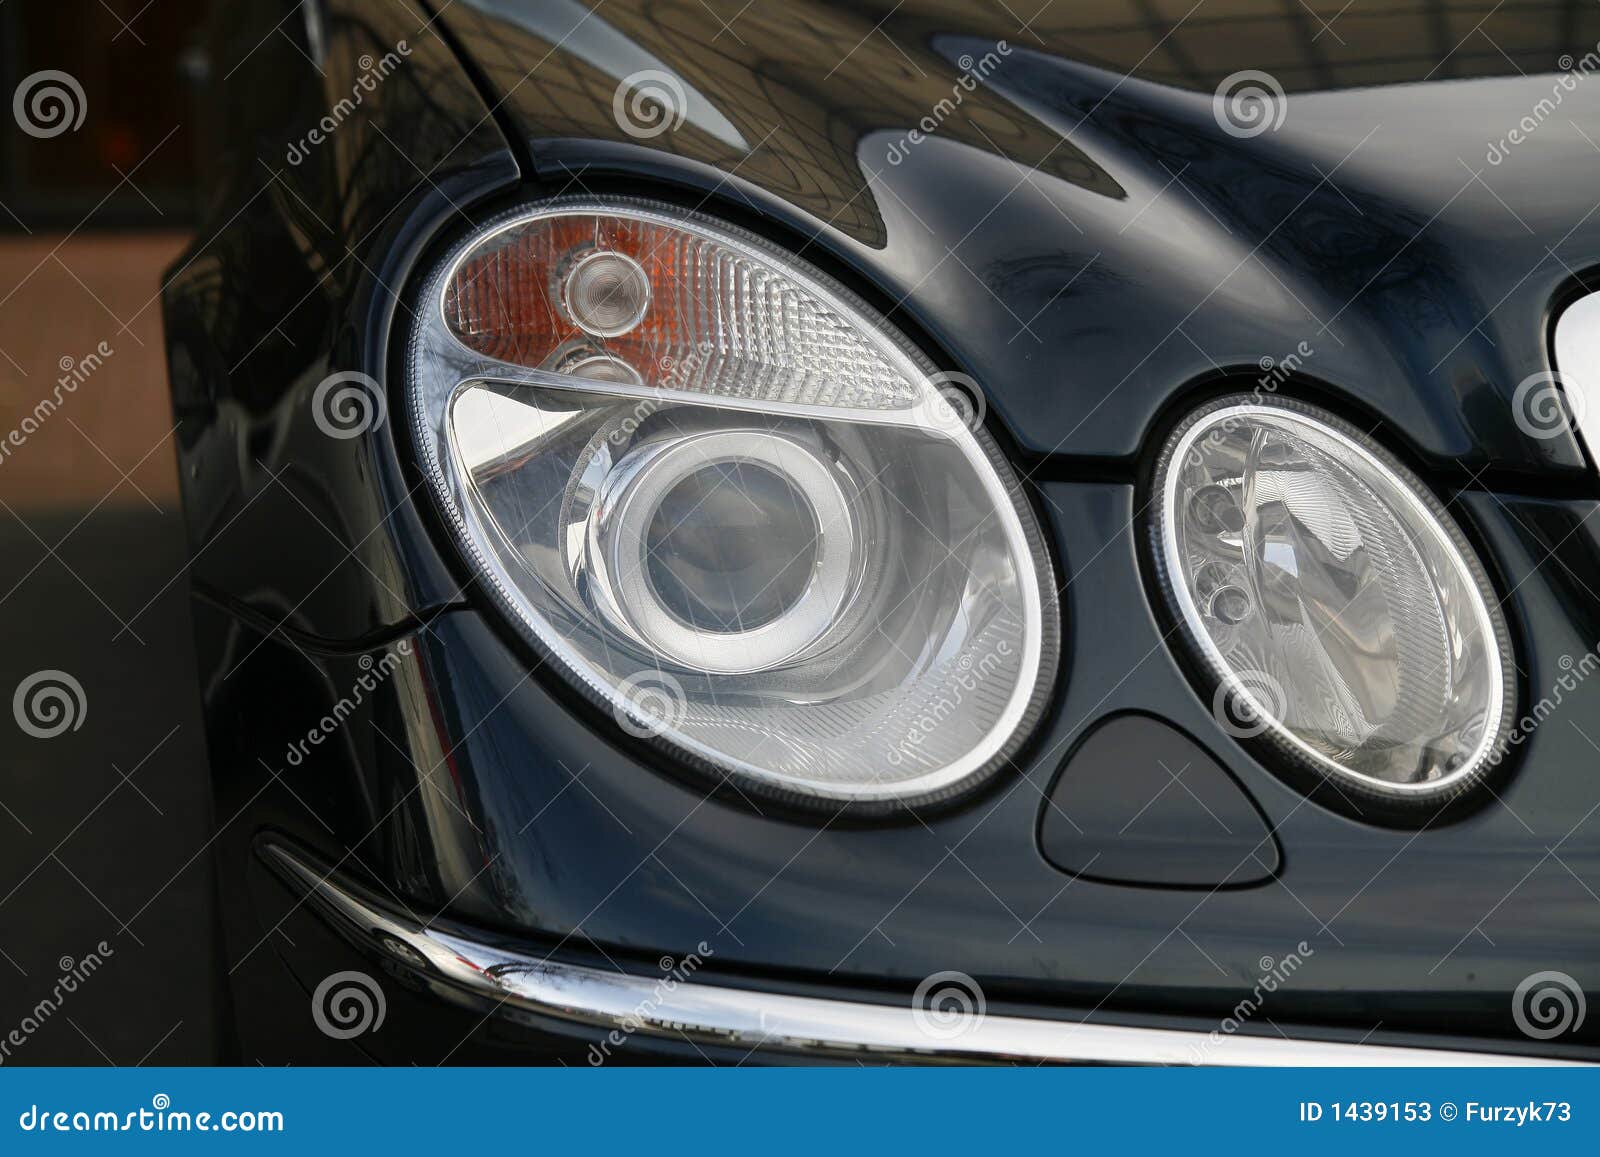 headlamp of expensive car